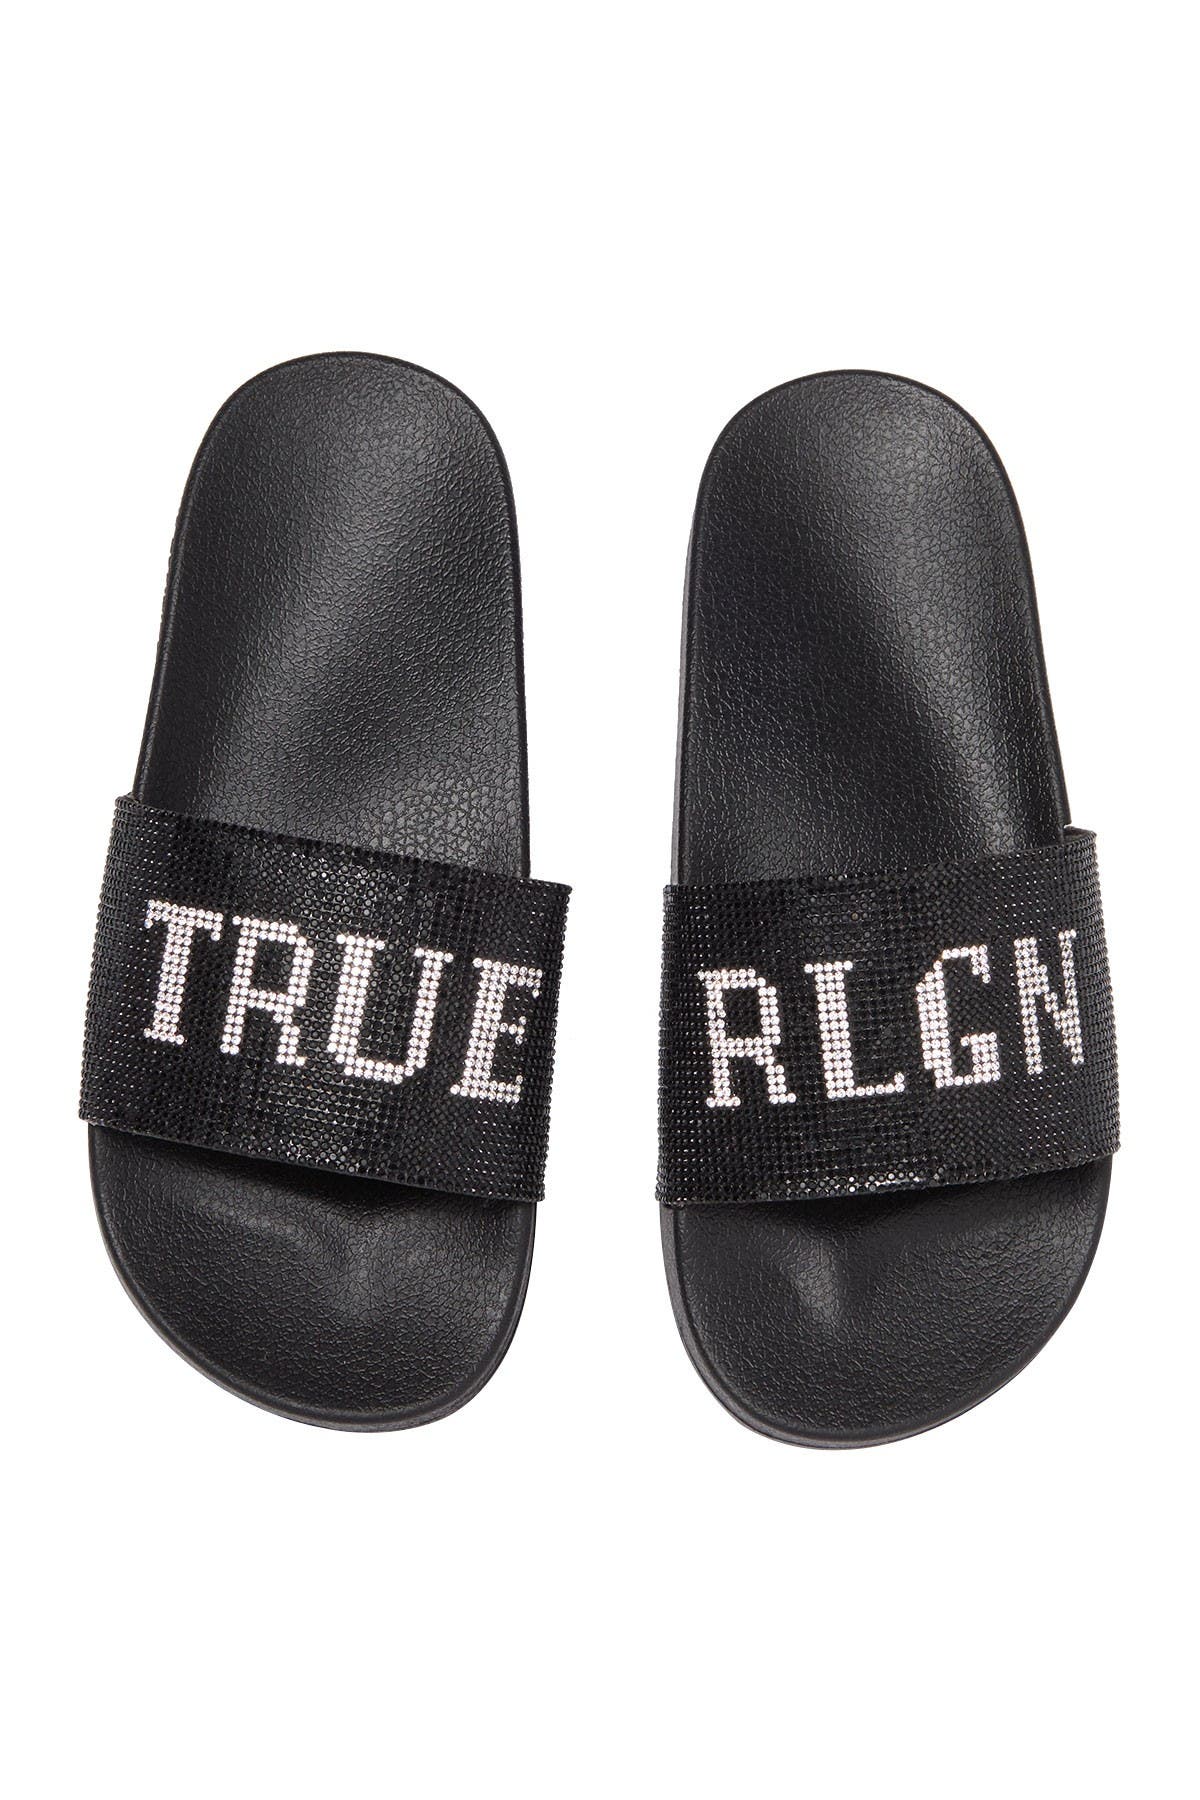 True Religion | Meyer Pool Slide Sandal 